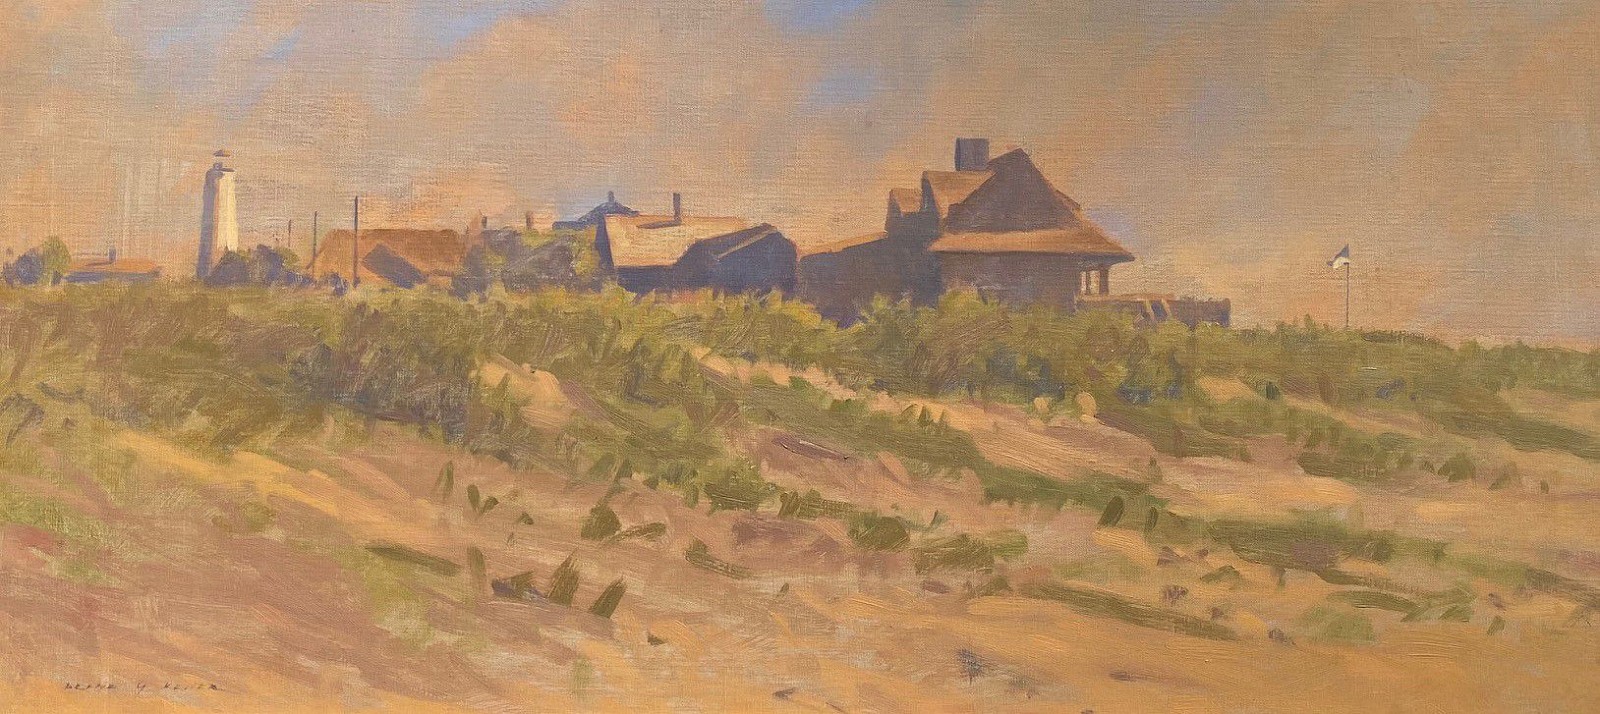 Deane G. Keller, Morning in Fenwick
oil on canvas, 16"" x 34""
JCA 6573
$1,200